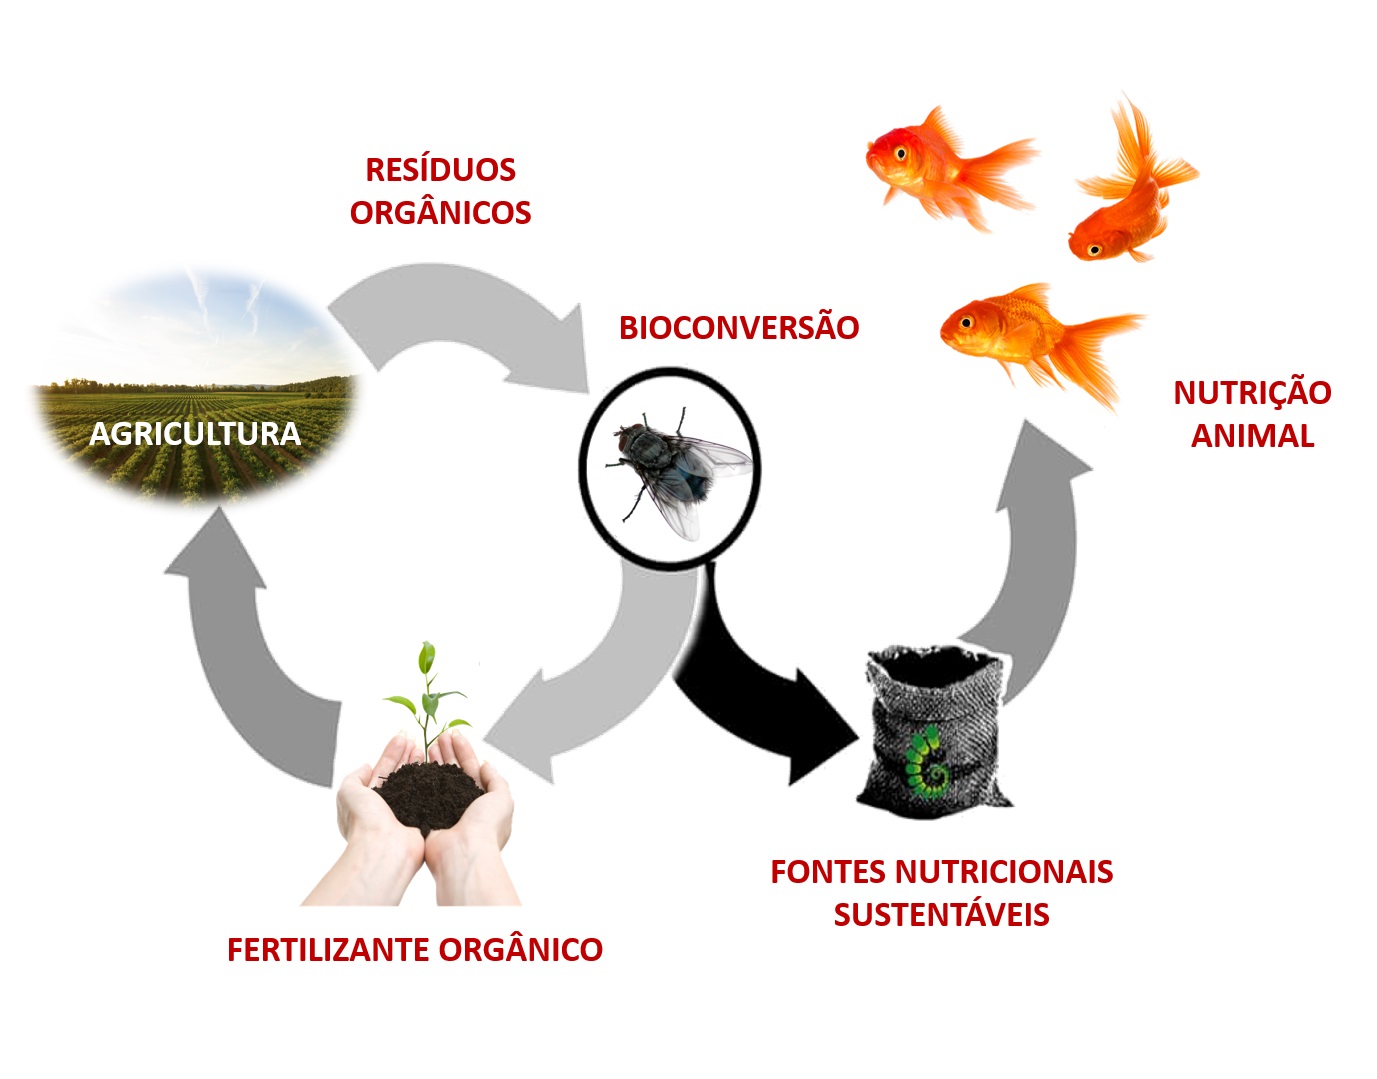 Insetos são recurso para o tratamento de resíduos orgânicos e produção de composto